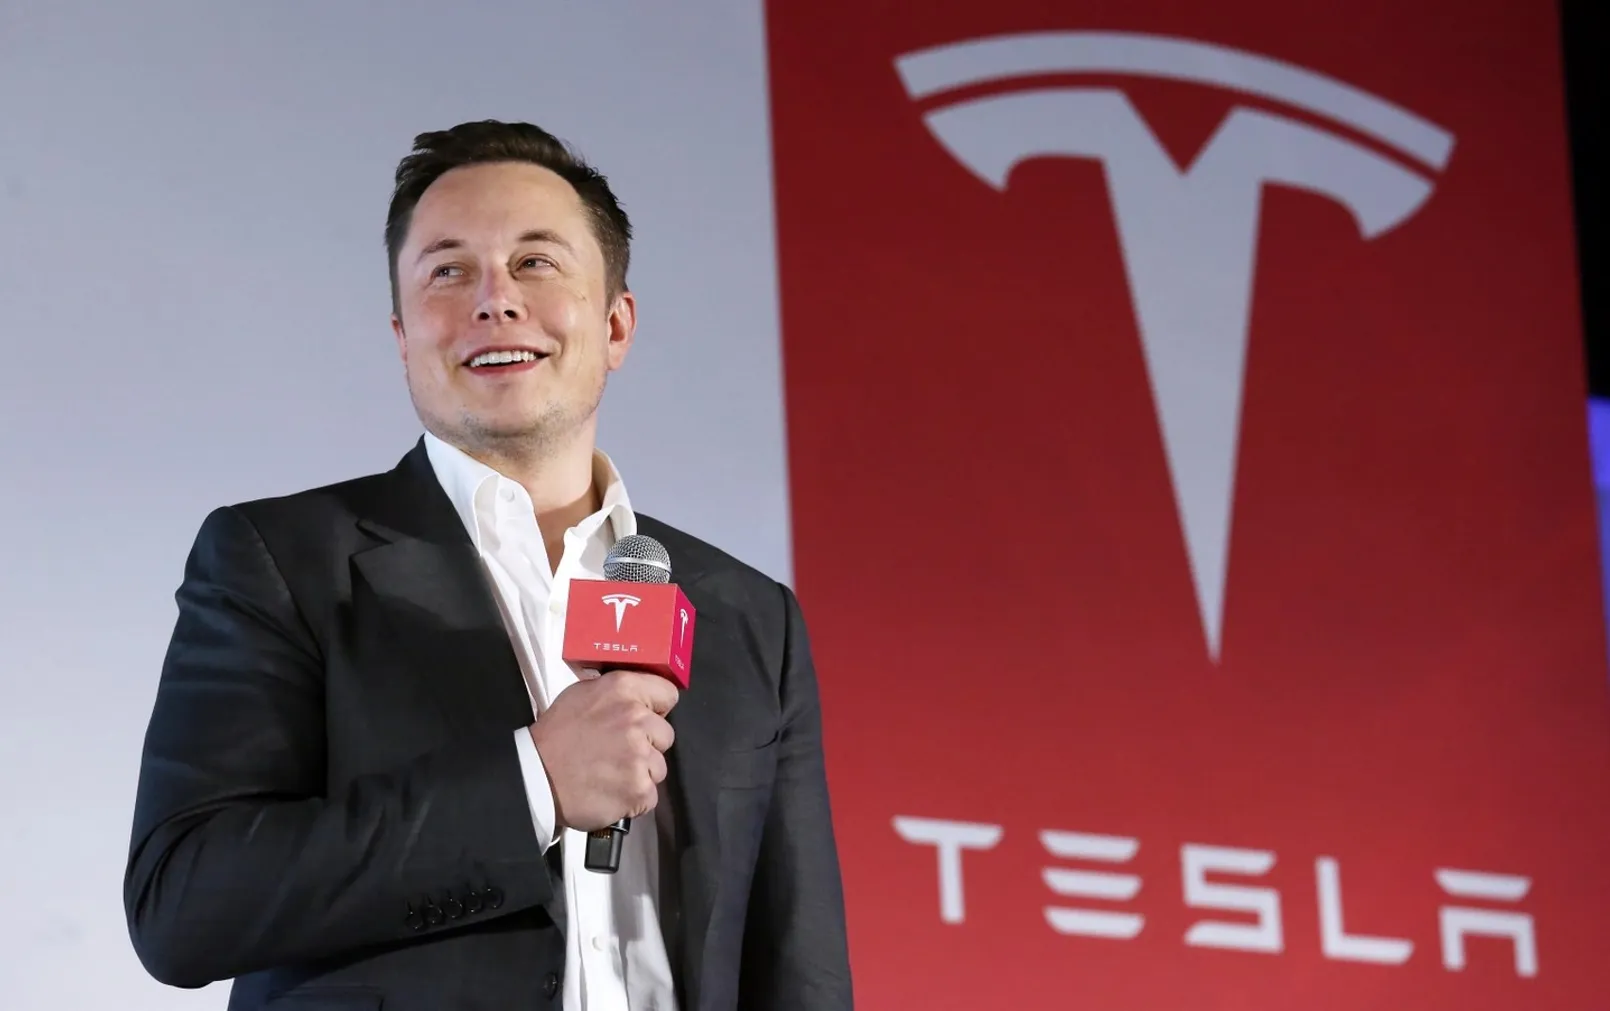 Elon Musk Tesla the Richest Man 01.jpg